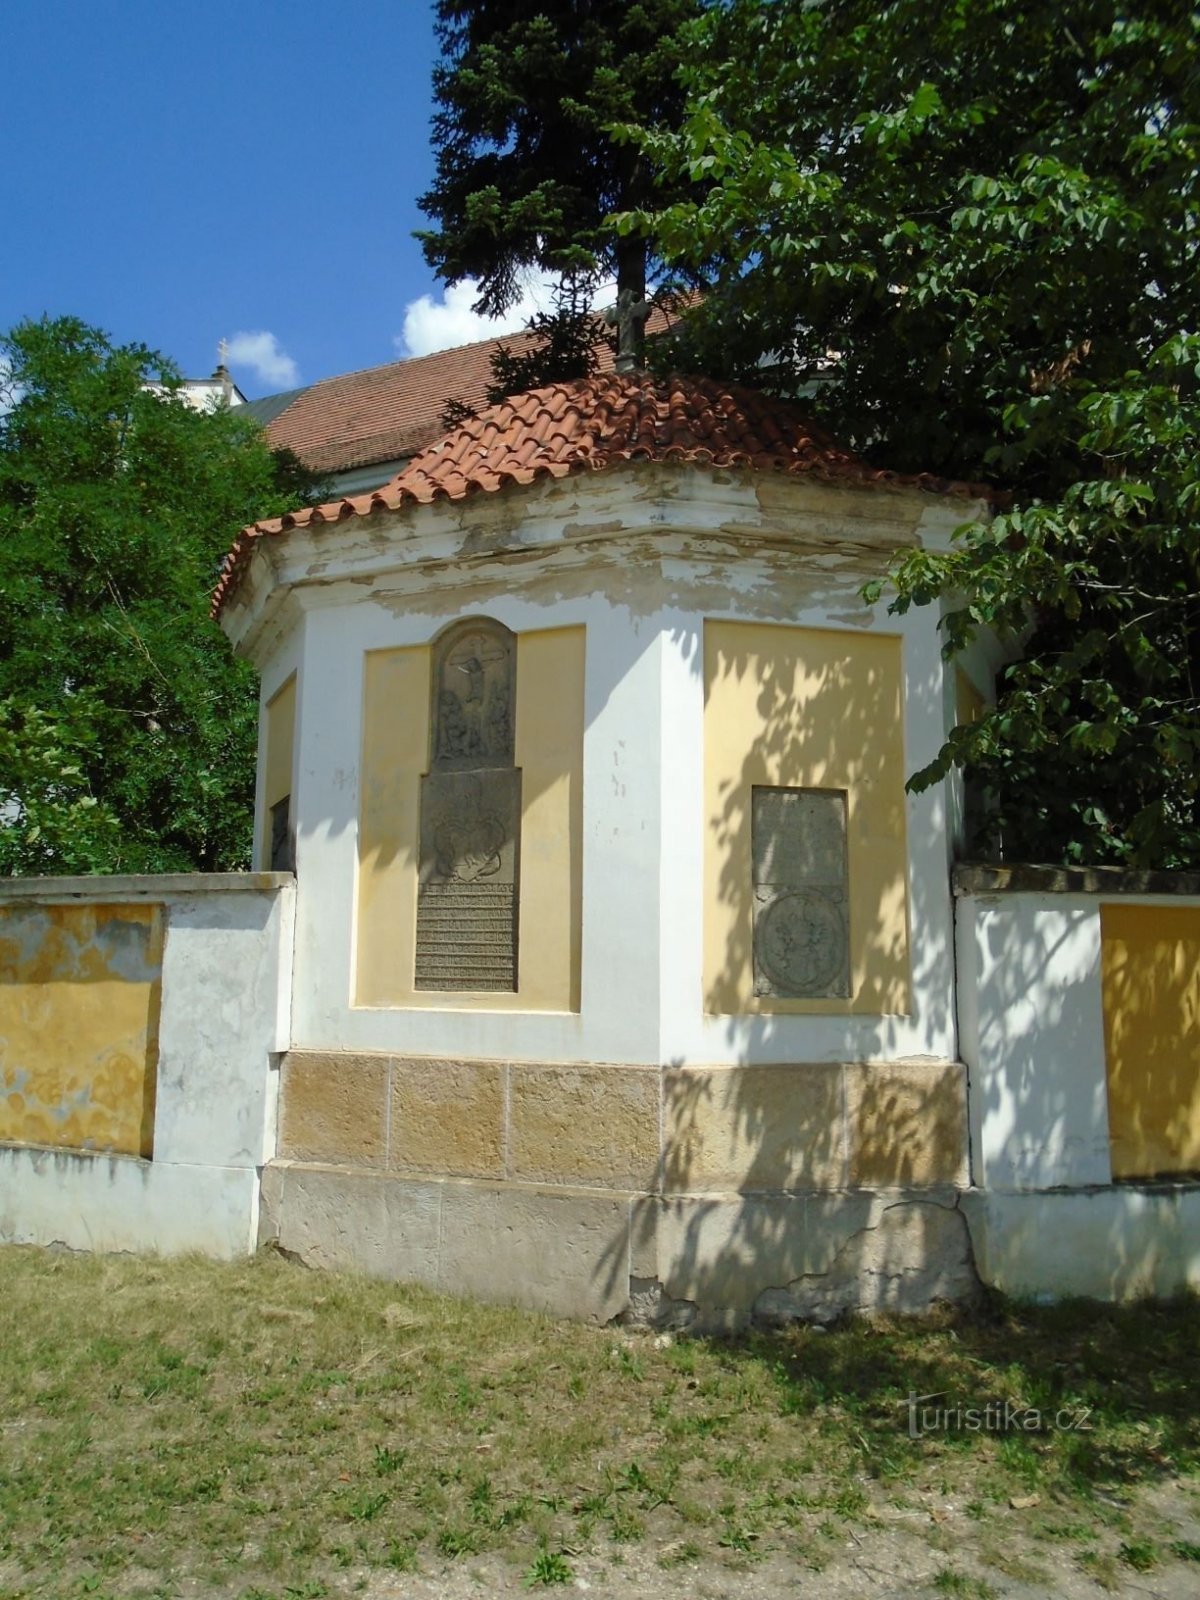 古い墓地にあるバロック様式の遺体安置所 (ドブジェニツェ、21.6.2018 年 XNUMX 月 XNUMX 日)